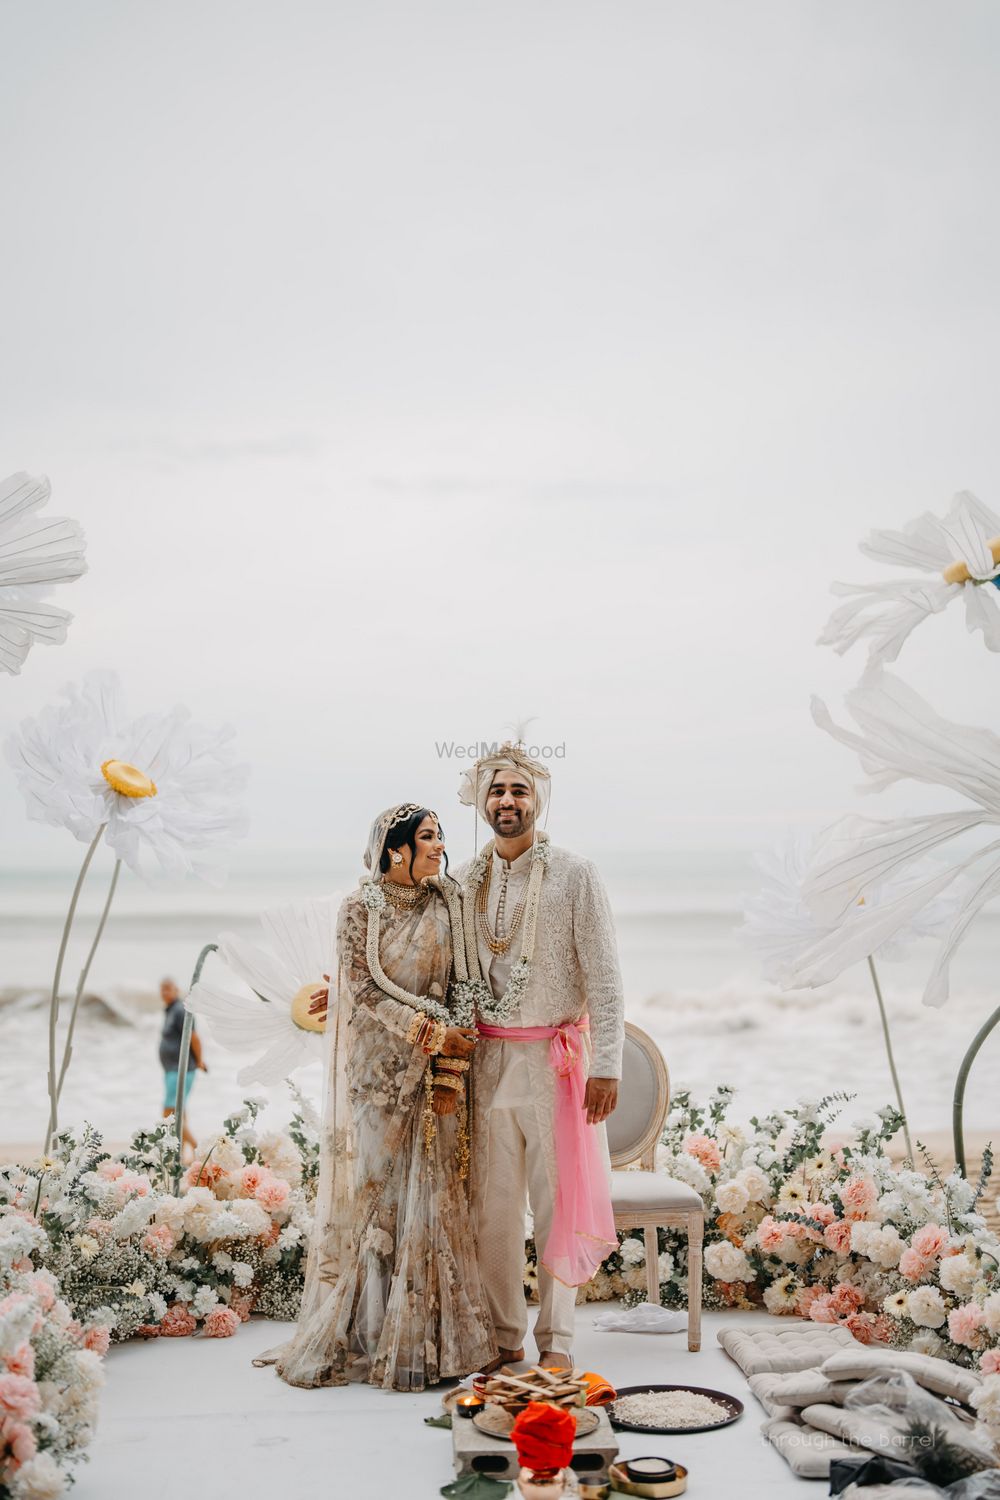 Wedding Photoshoot & Poses Photo